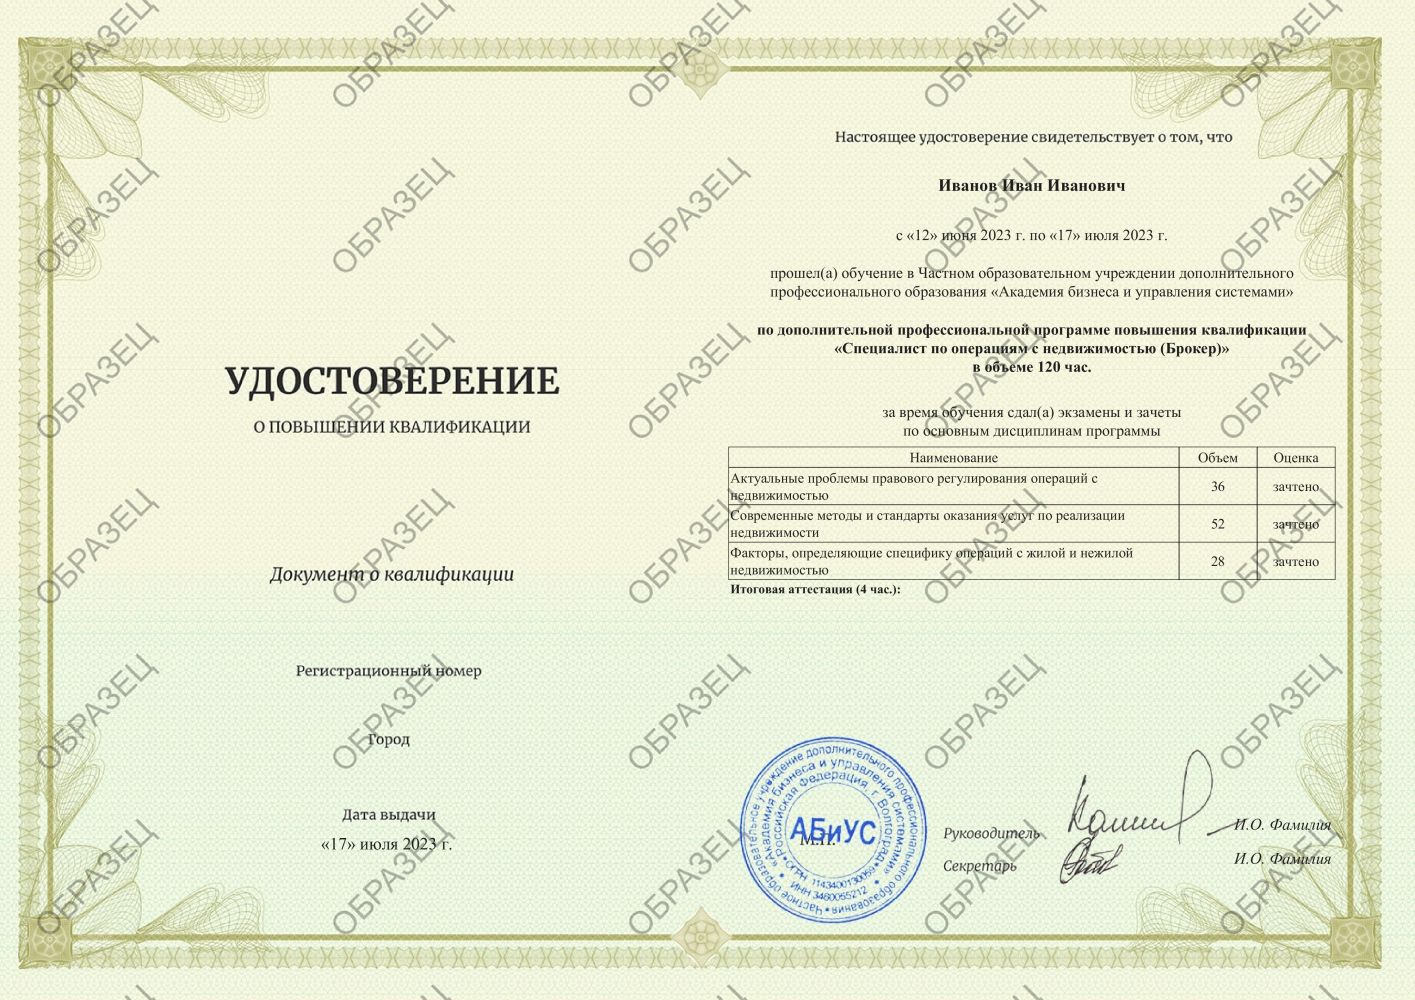 Удостоверение Специалист по операциям с недвижимостью (Брокер) 120 часов 24563 руб.